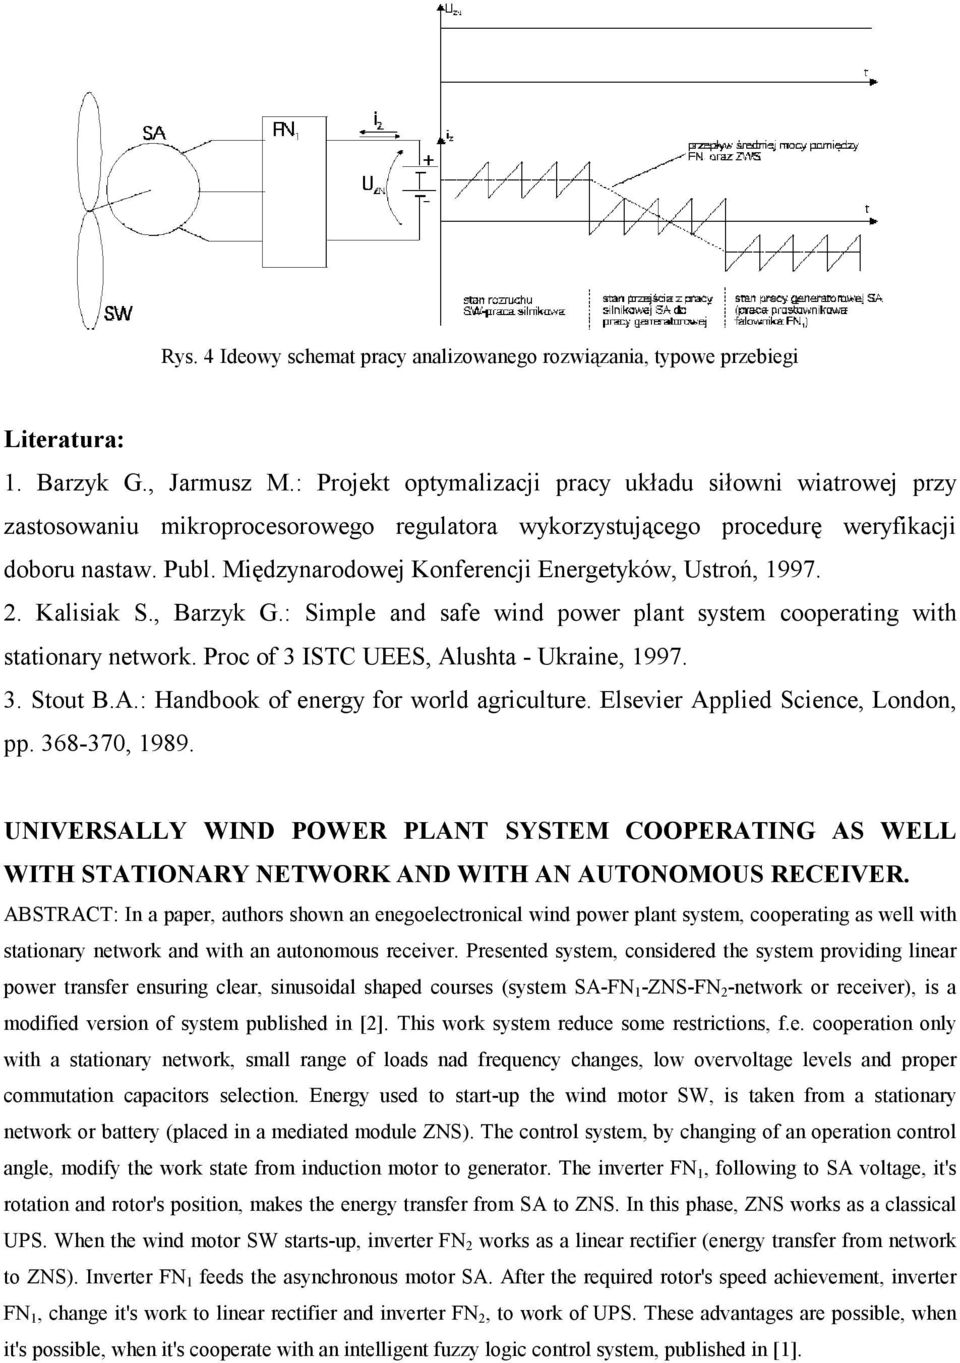 Międzynarodowej Konferencji Energetyków, Ustroń, 1997. 2. Kalisiak S., Barzyk G.: Simple and safe wind power plant system cooperating with stationary network.